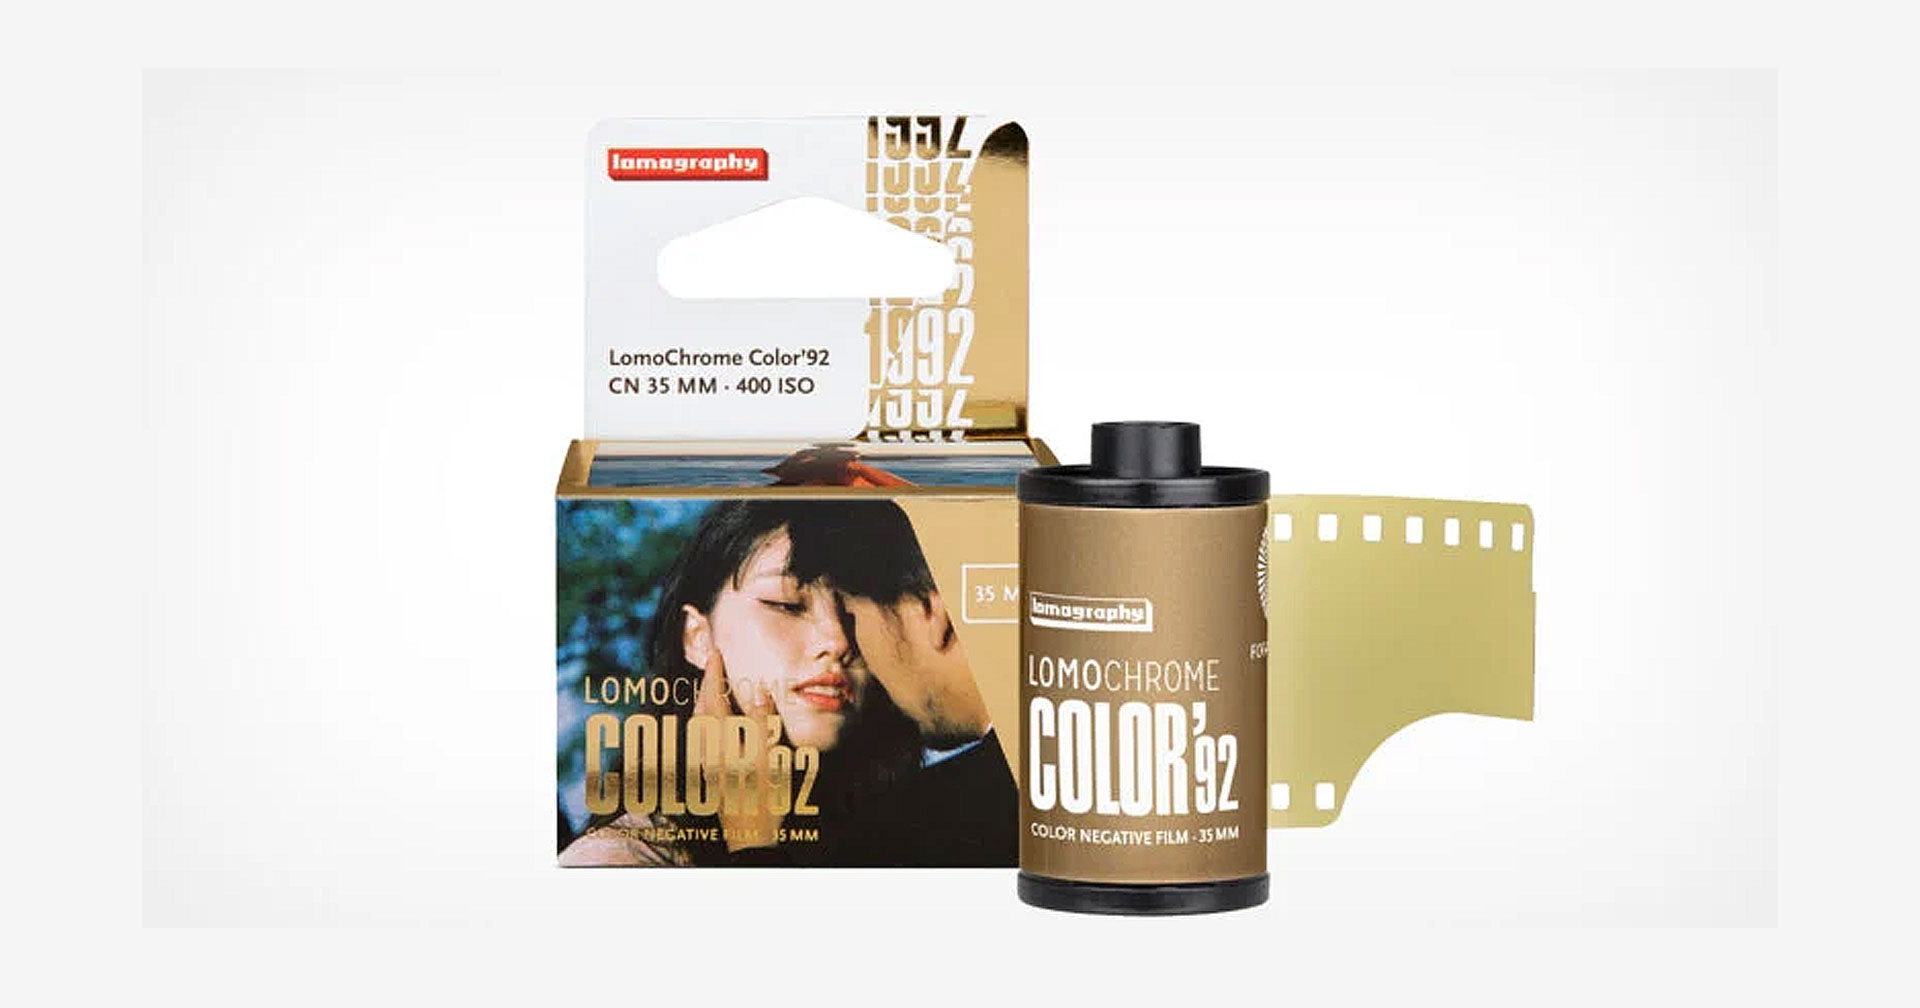 LomoChrome Color ’92 ฟิล์มสี ISO 400 ที่ให้อารมณ์ภาพสไตล์ Nostalgia